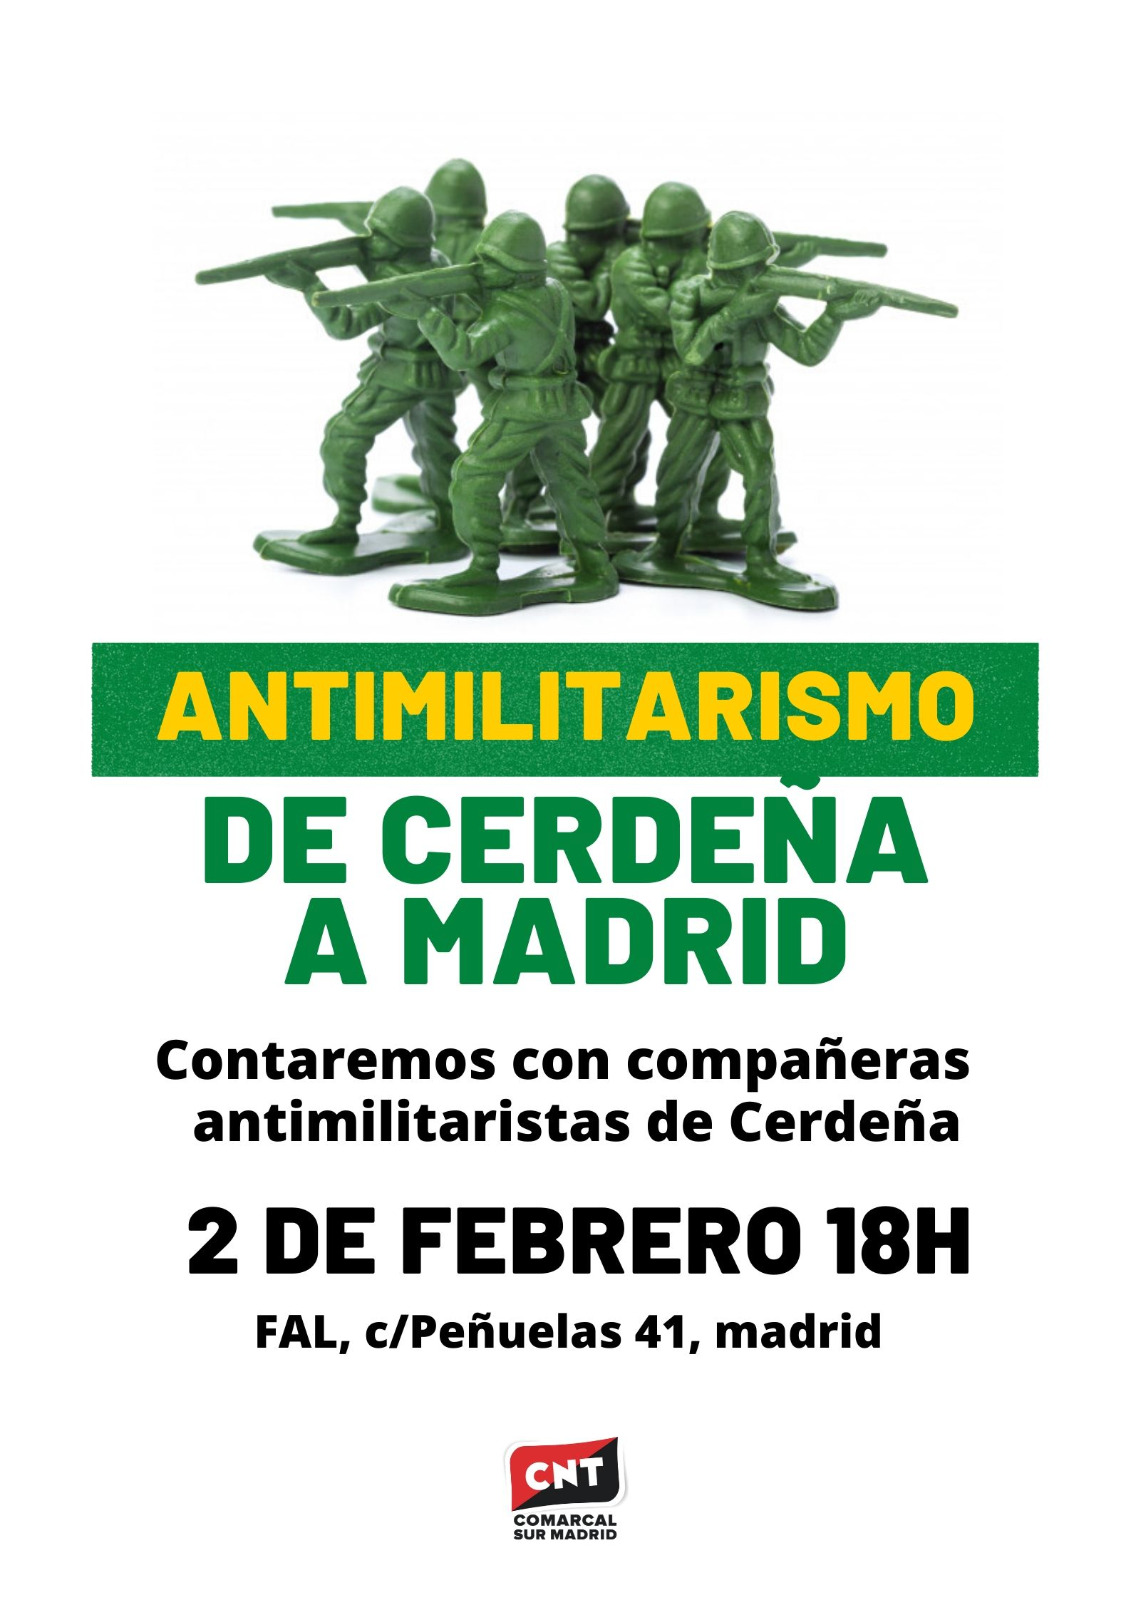 Antimilitarismo: De Cerdeña a Madrid